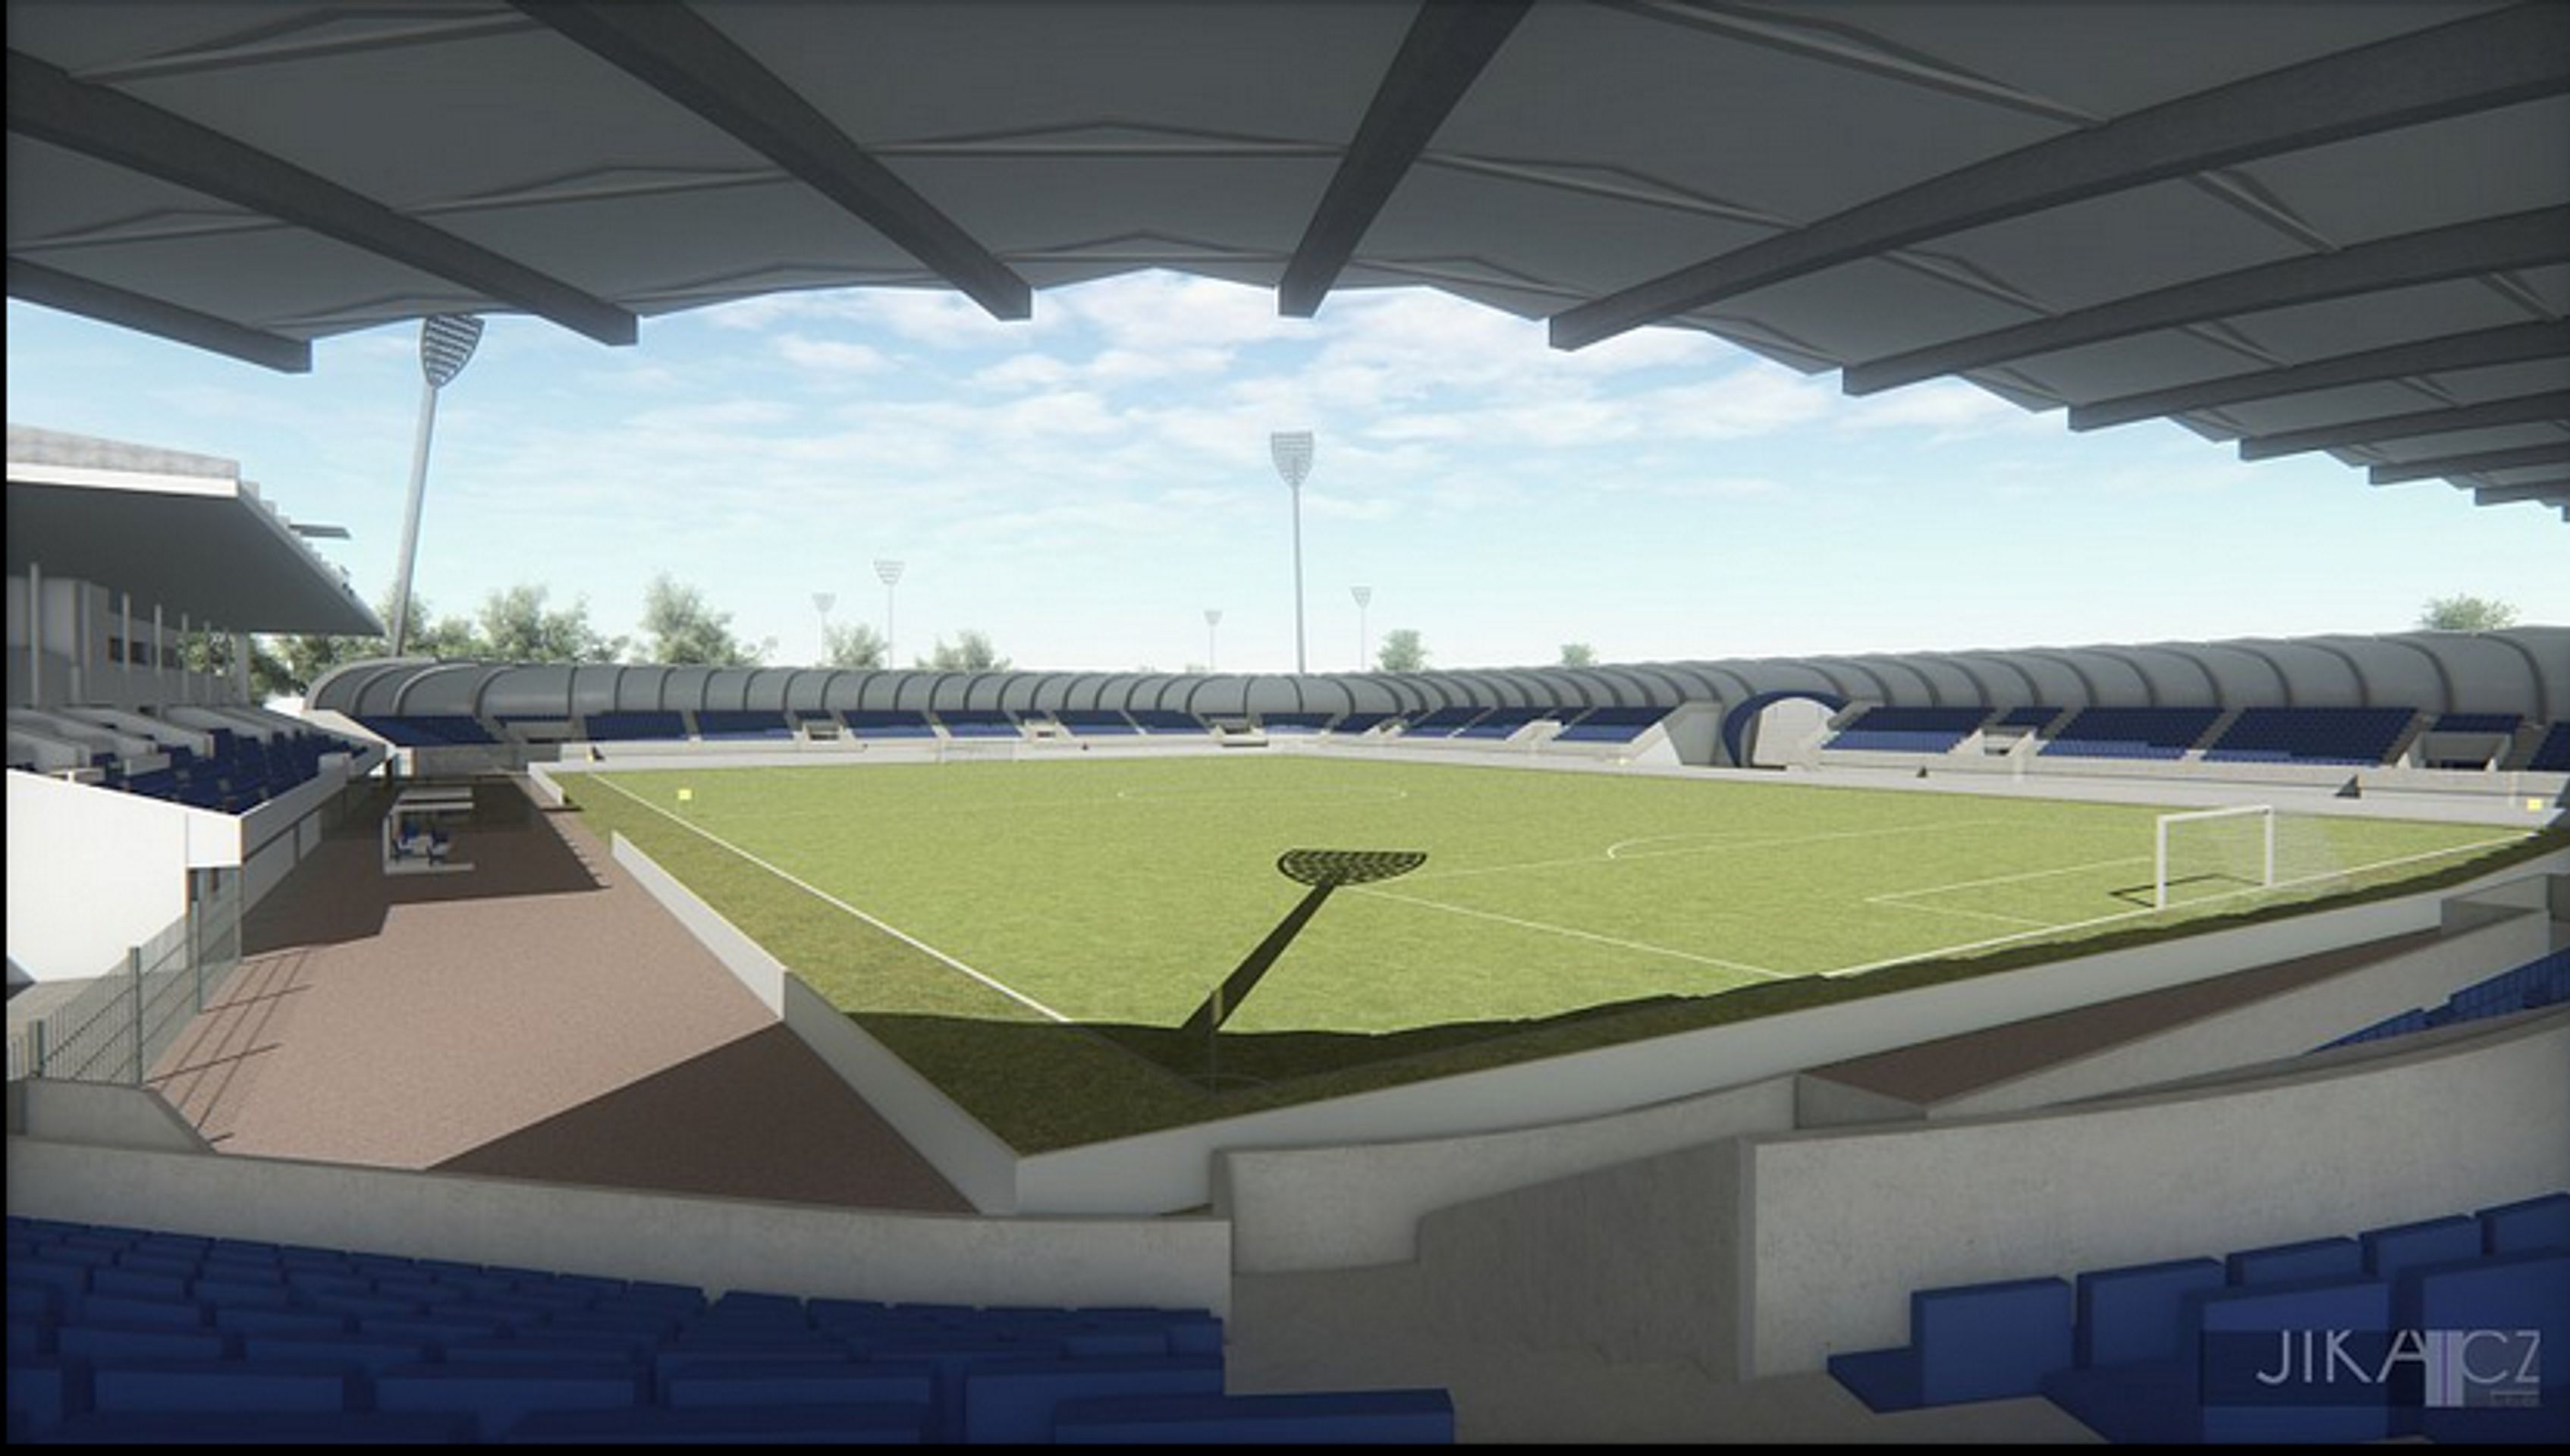 Takhle by měl vypadat nový fotbalový stadion v Pardubicích - GALERIE: Vizualizace nového stadionu v Pardubicích (3/4)